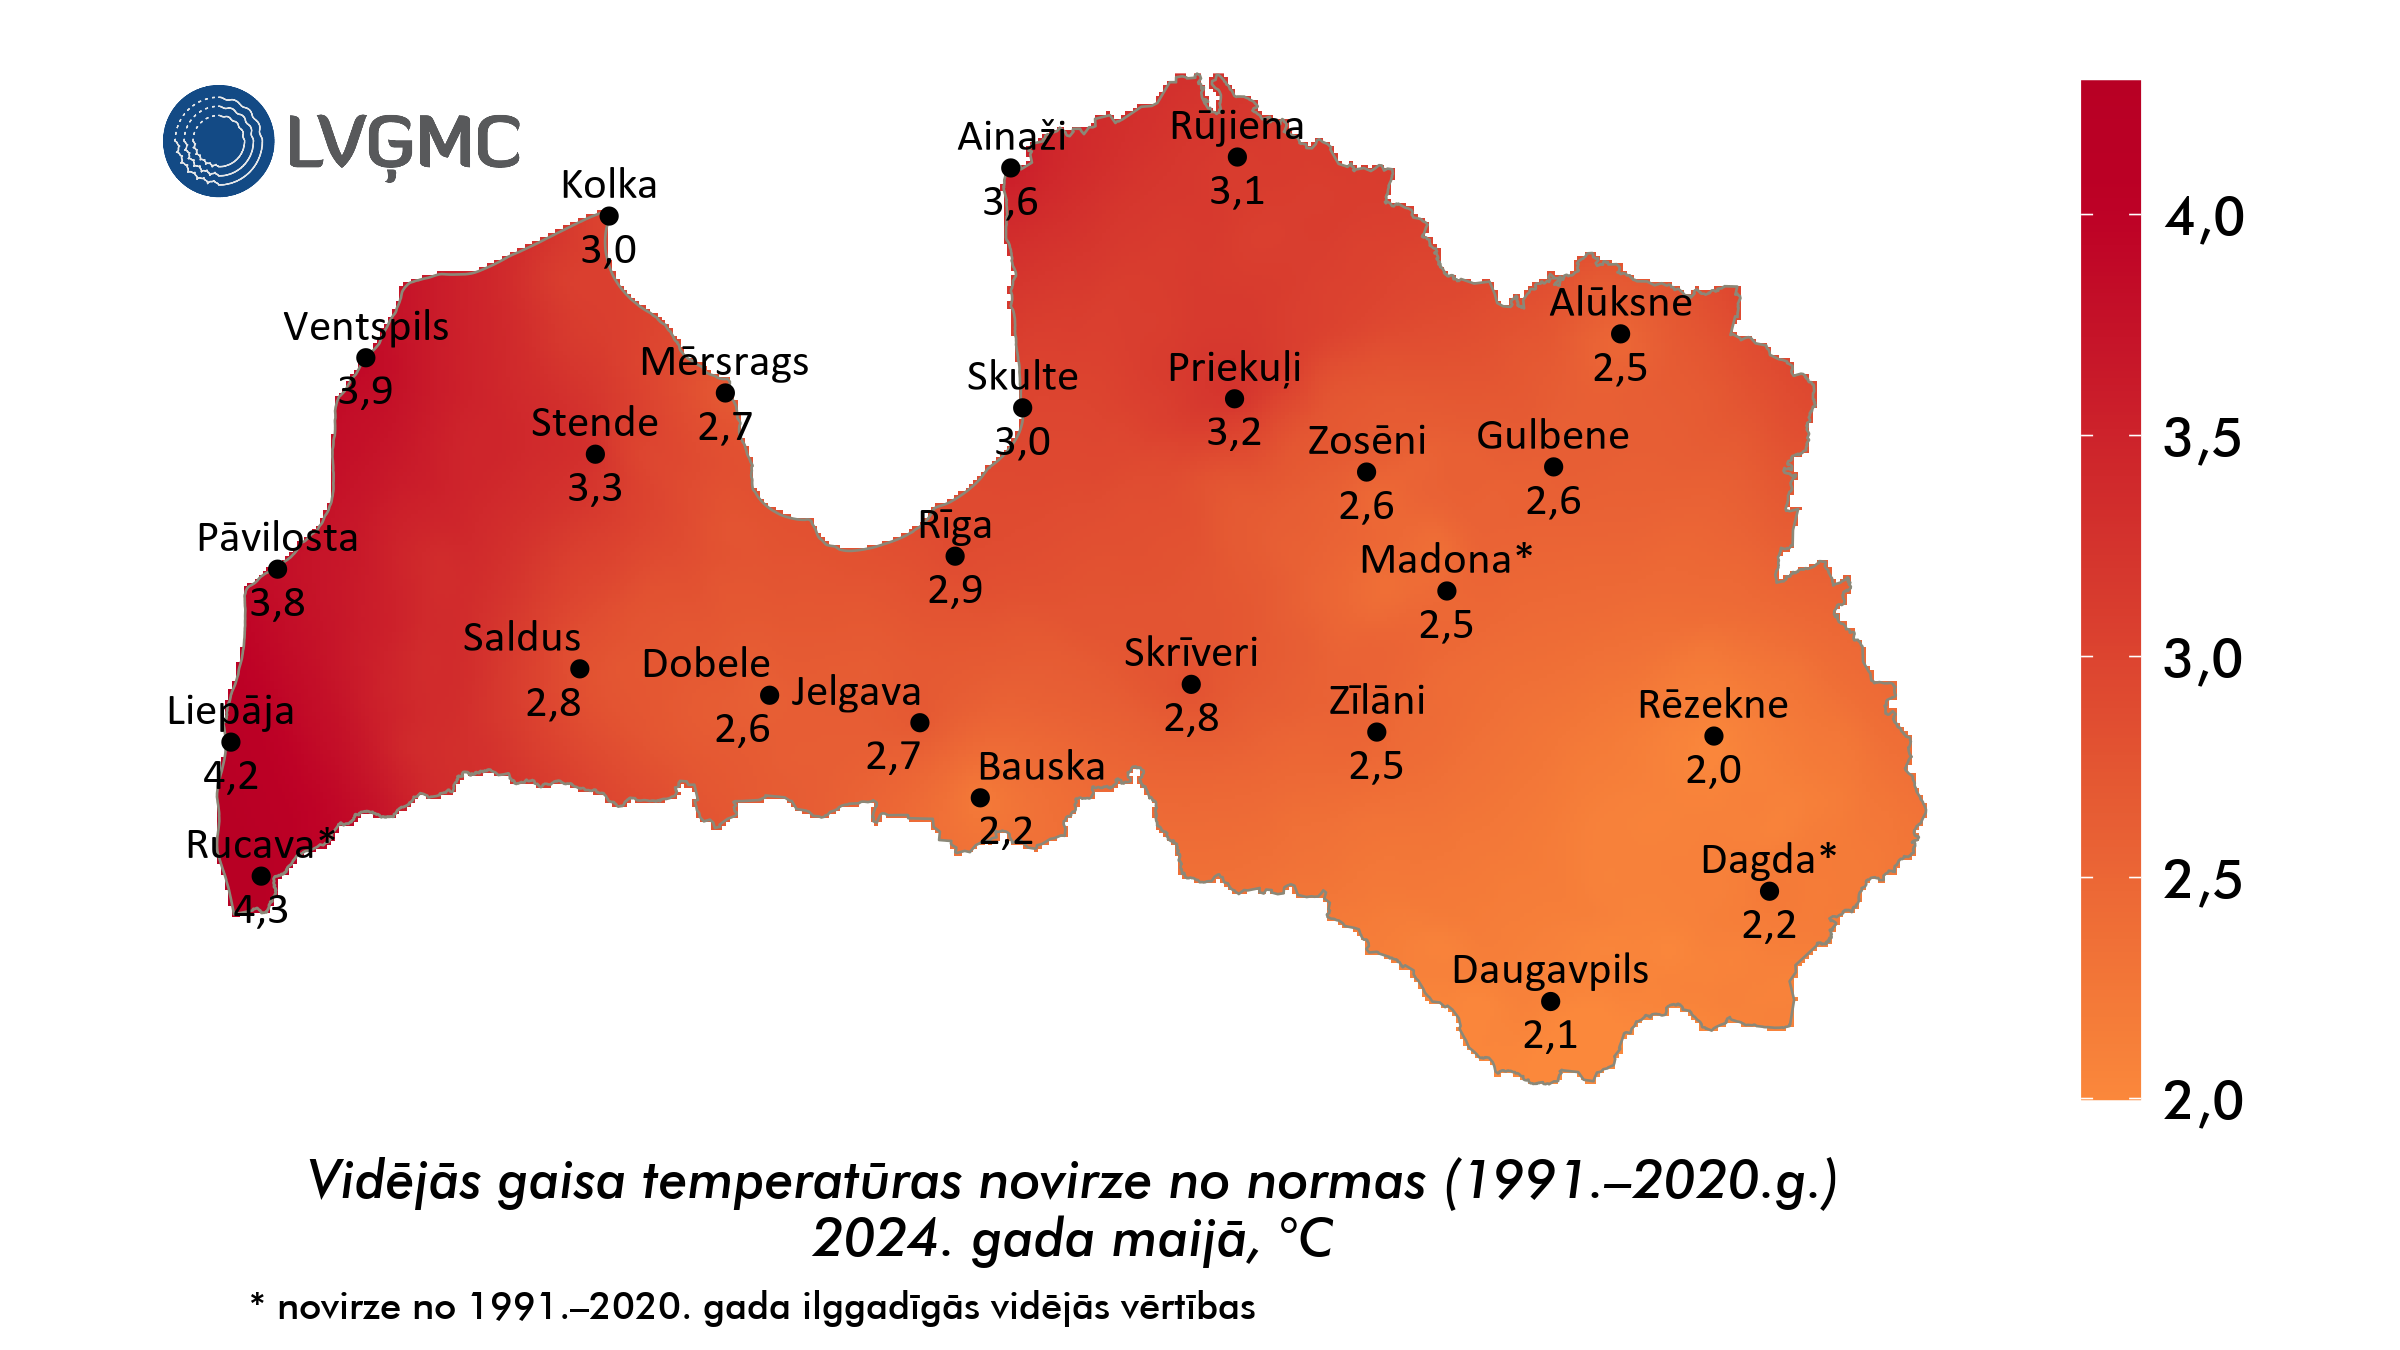 Vidējās gaisa temperatūras novirze no normas 2024. gada maijā, °C 